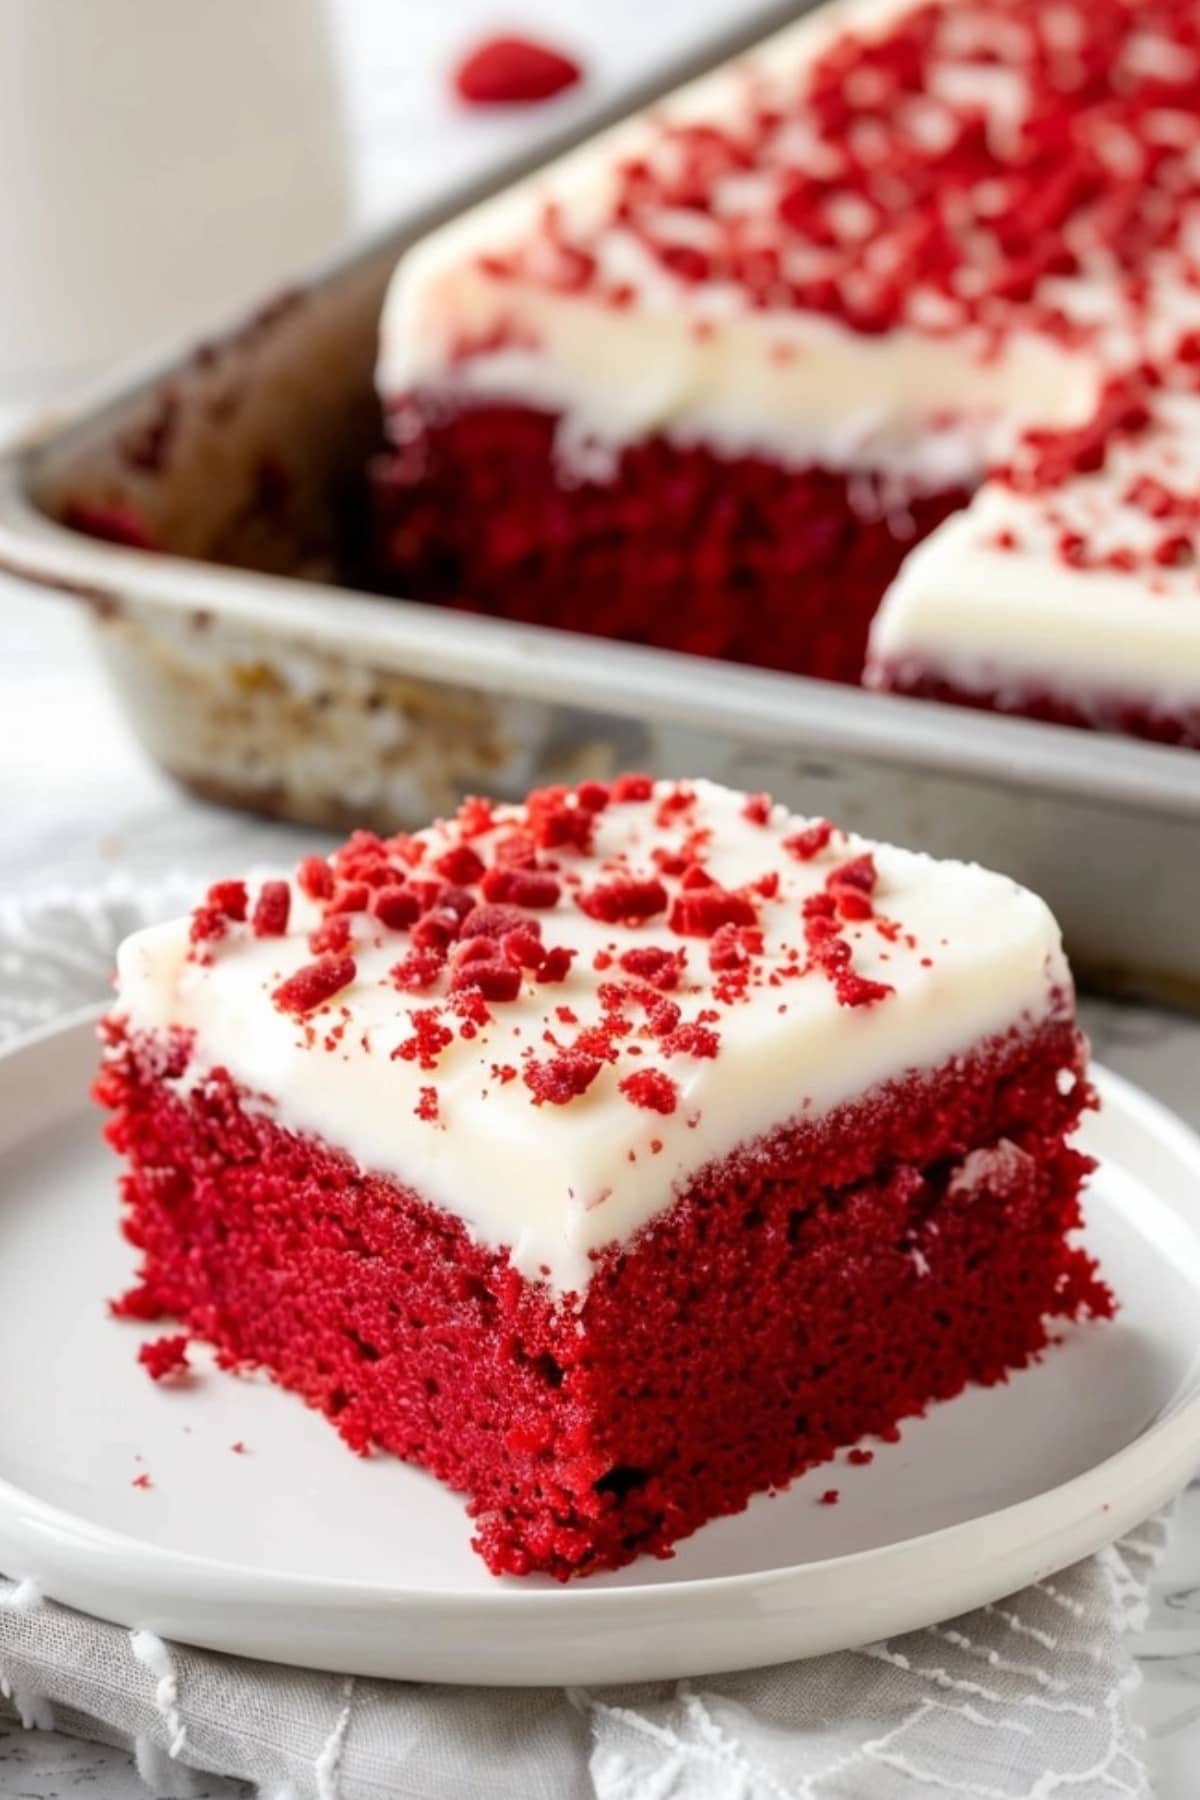 Slice of red velvet sheet cake in a white plate.